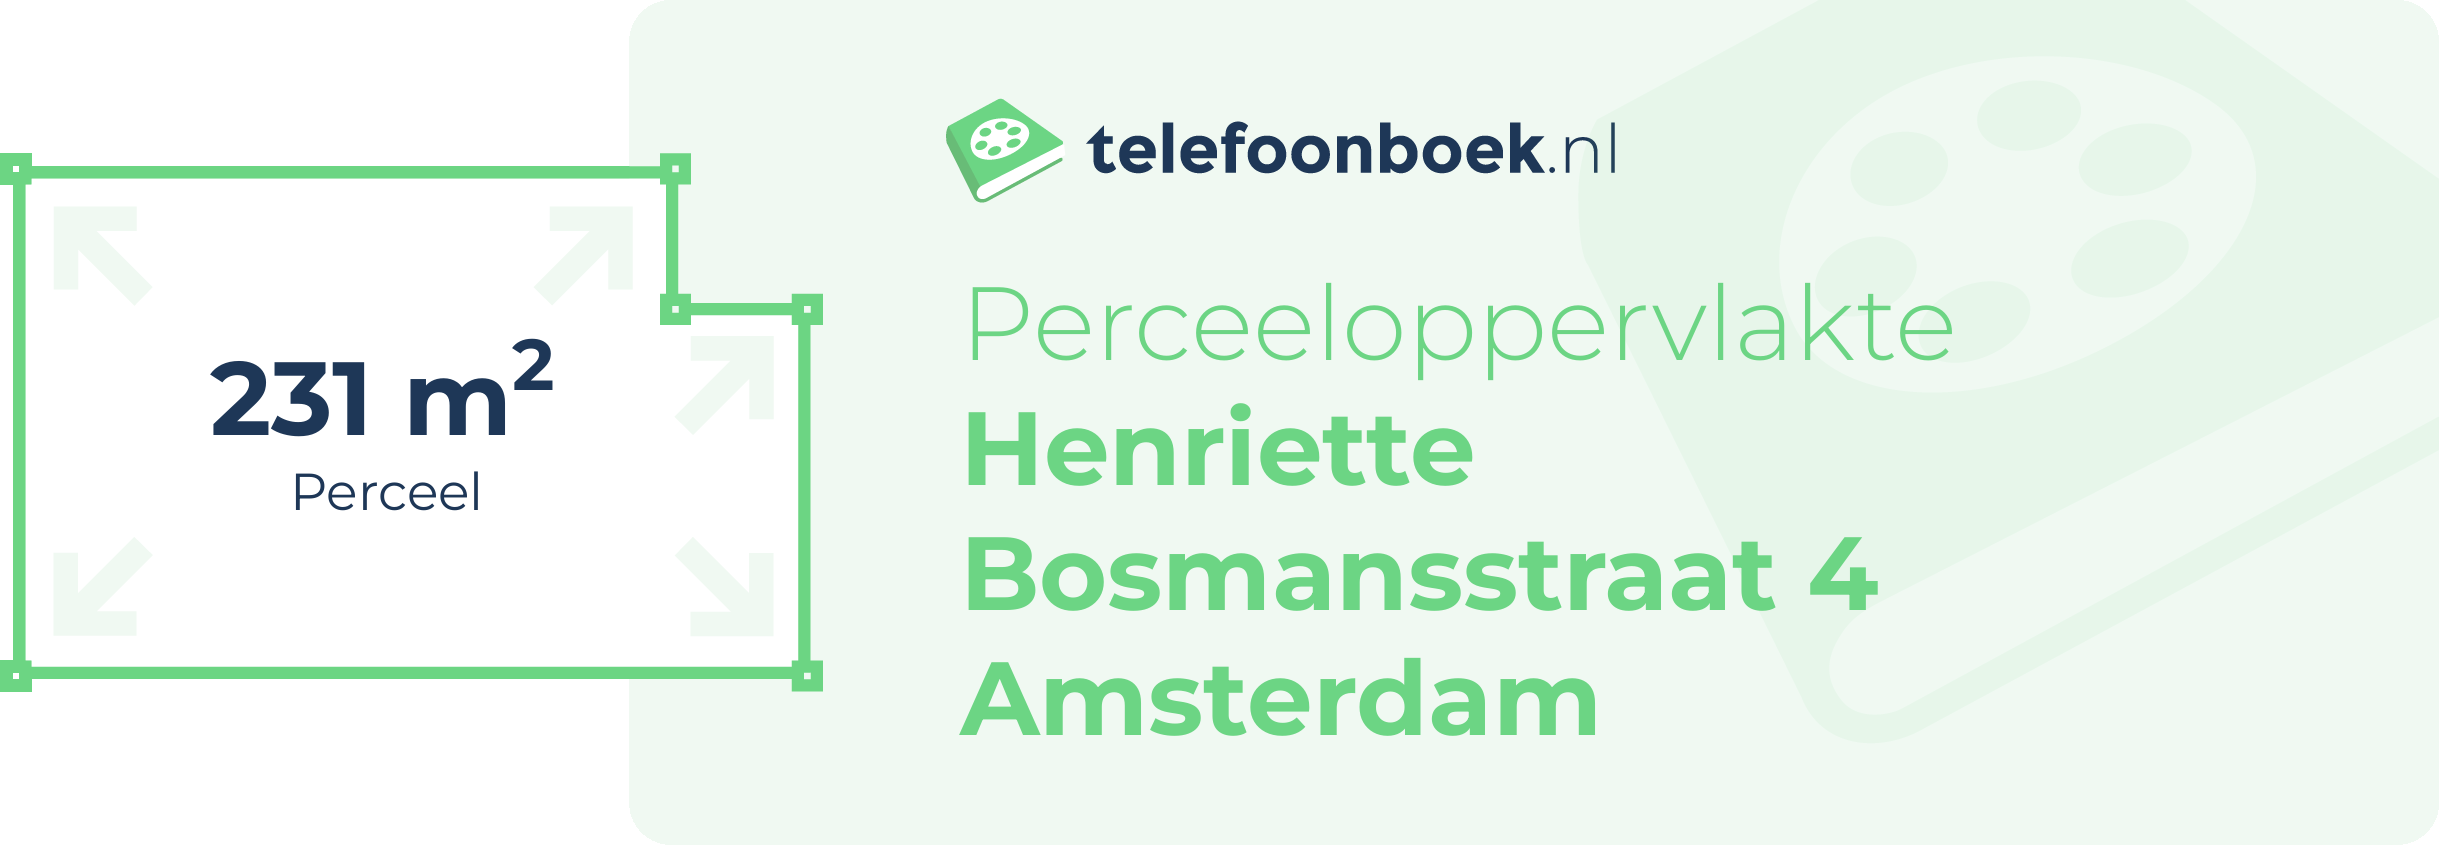 Perceeloppervlakte Henriette Bosmansstraat 4 Amsterdam